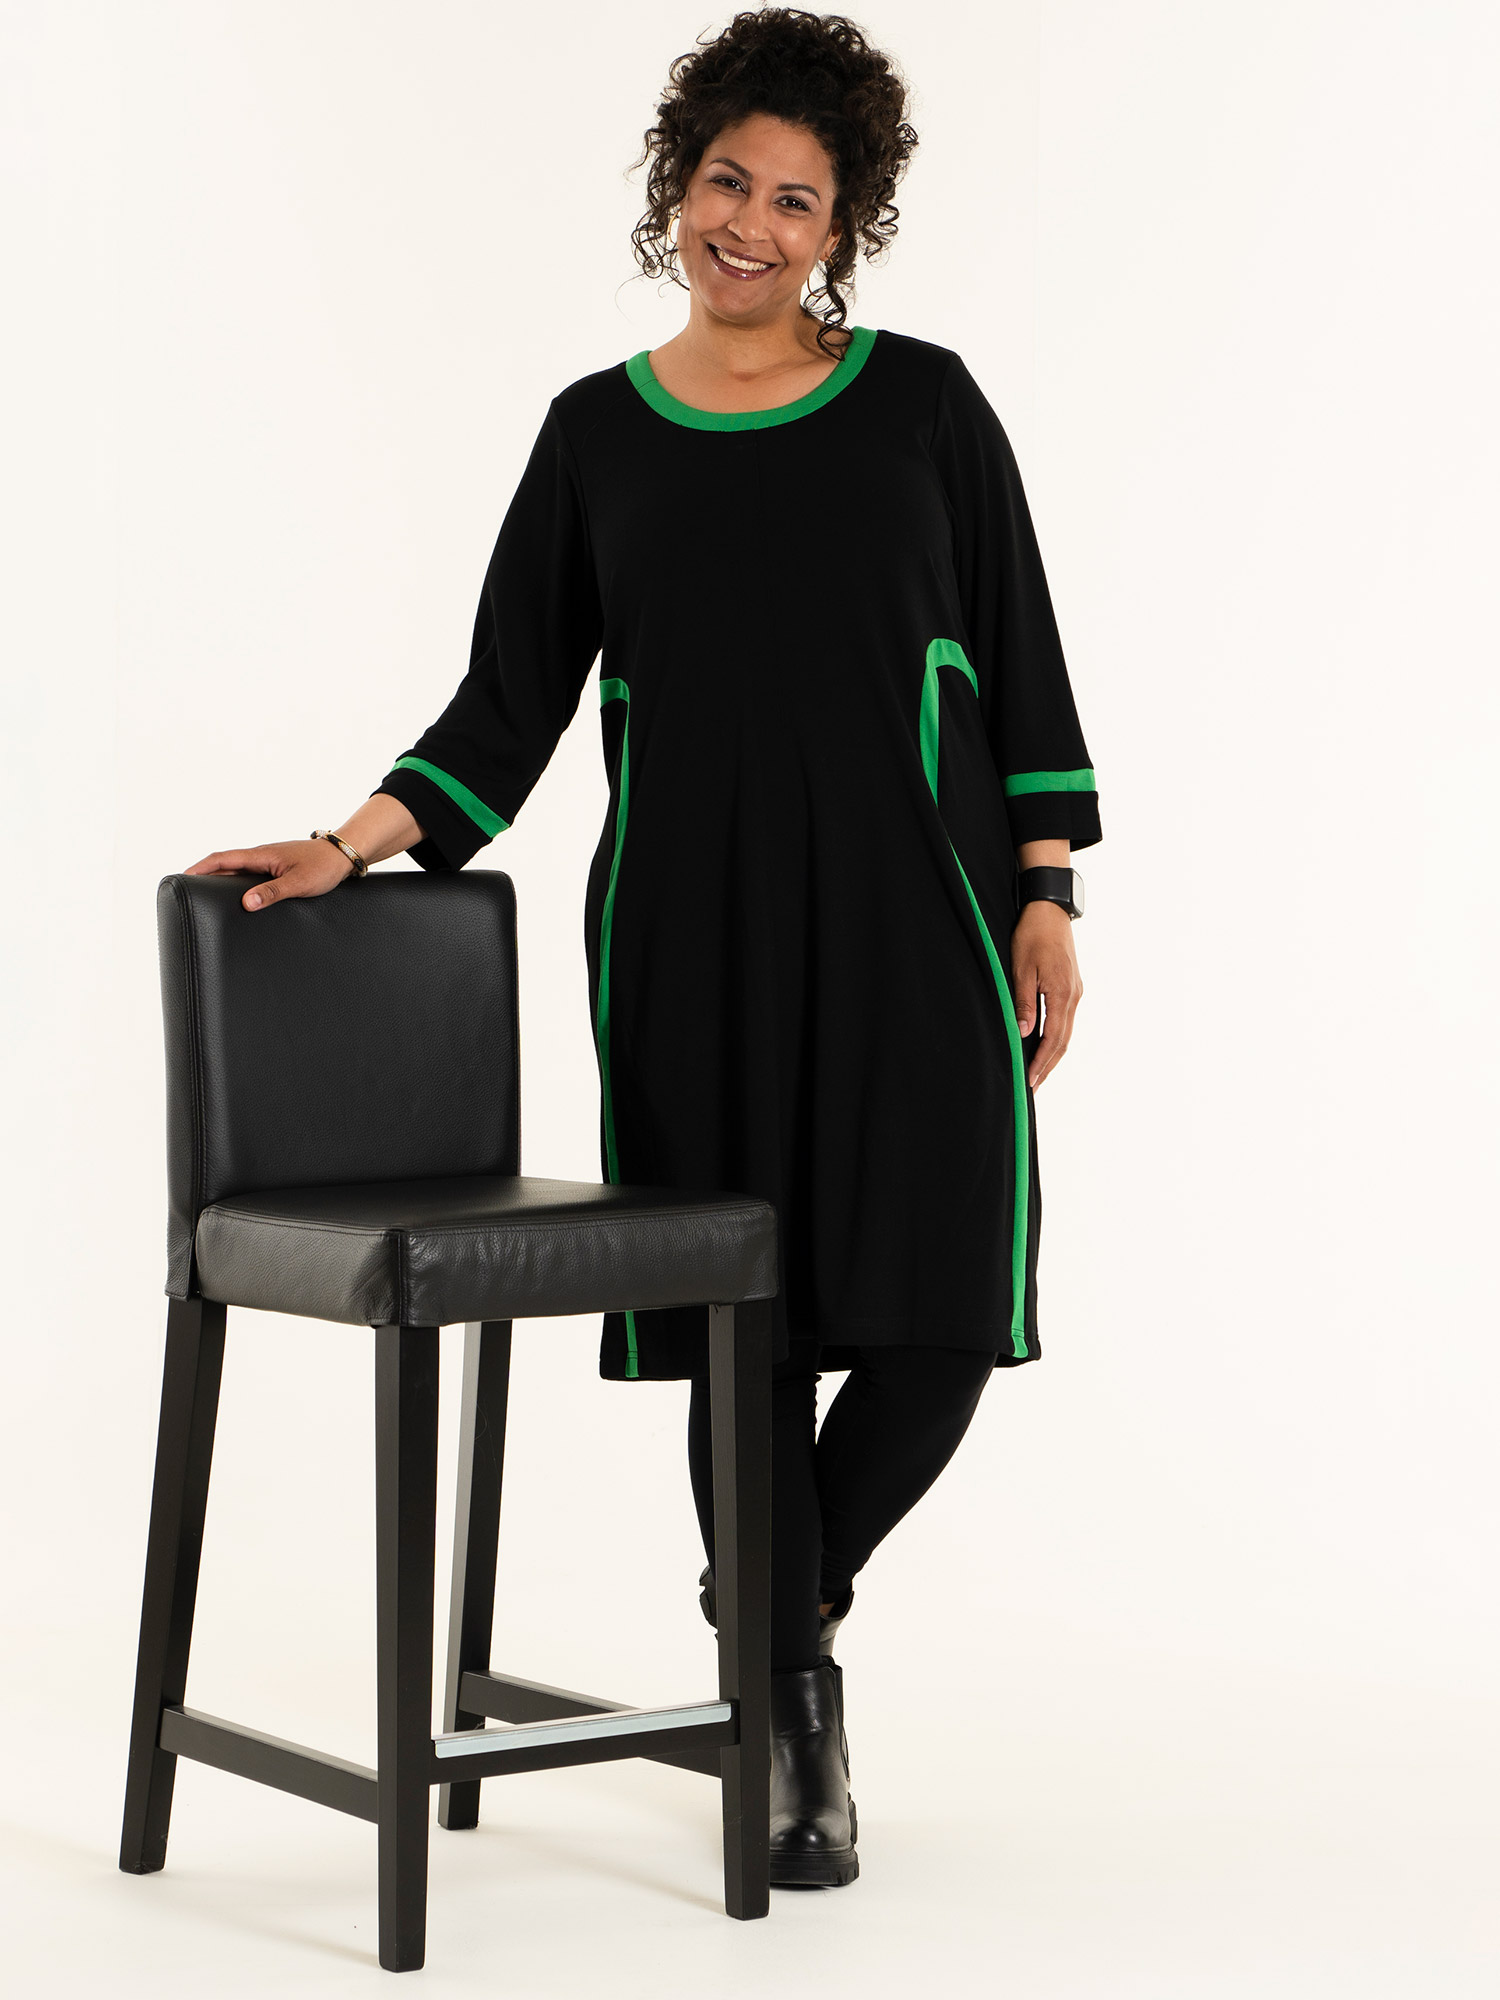 JOAN - Sort kjole i kraftig kvalitet med grønne detaljer fra Studio